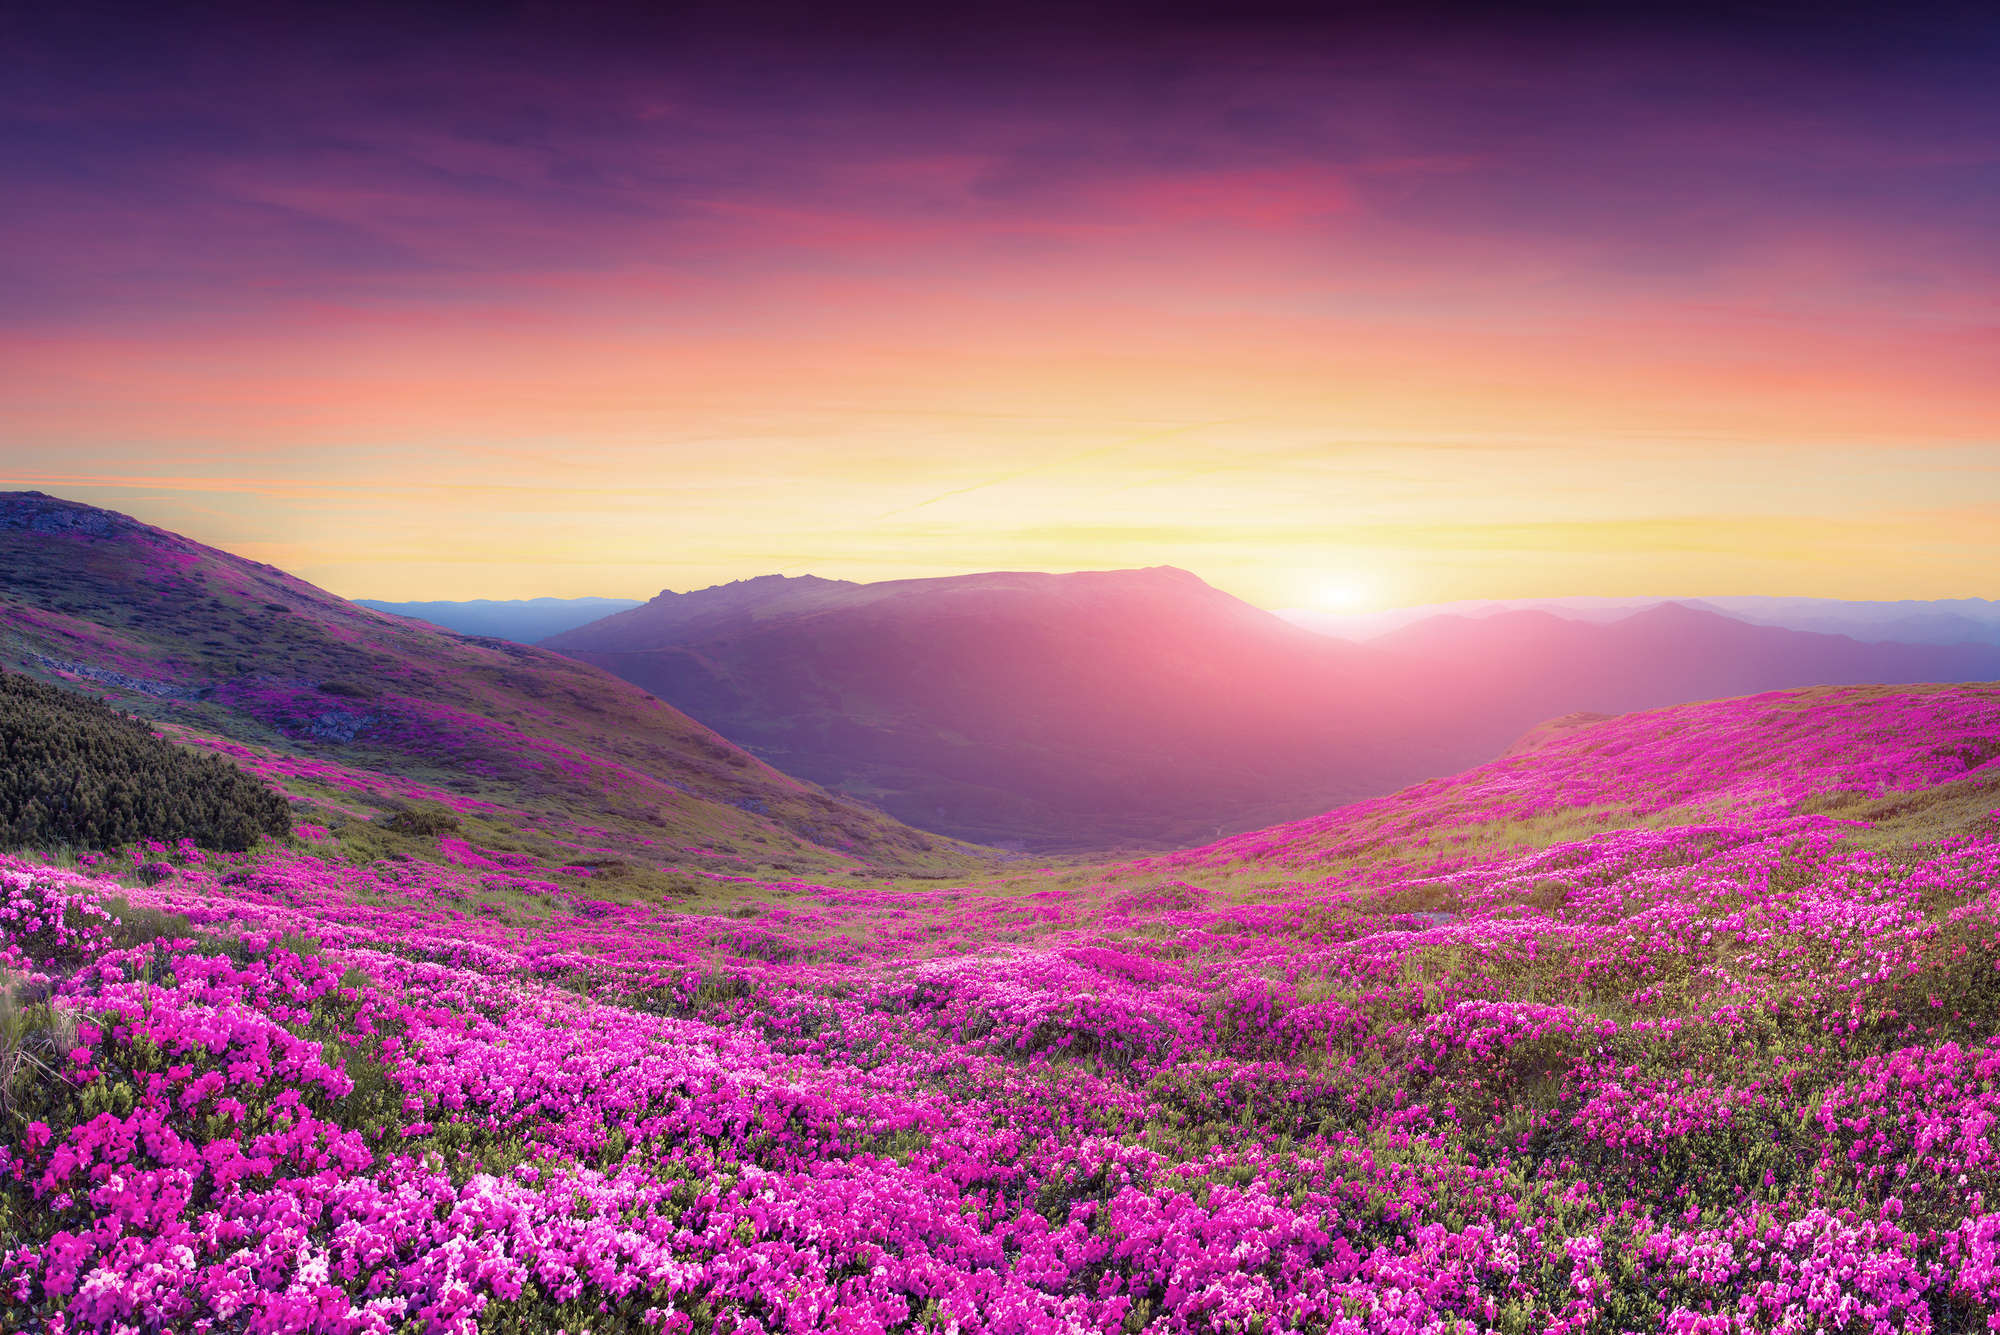             Papel pintado de la naturaleza prado de flores en las montañas en nácar liso
        